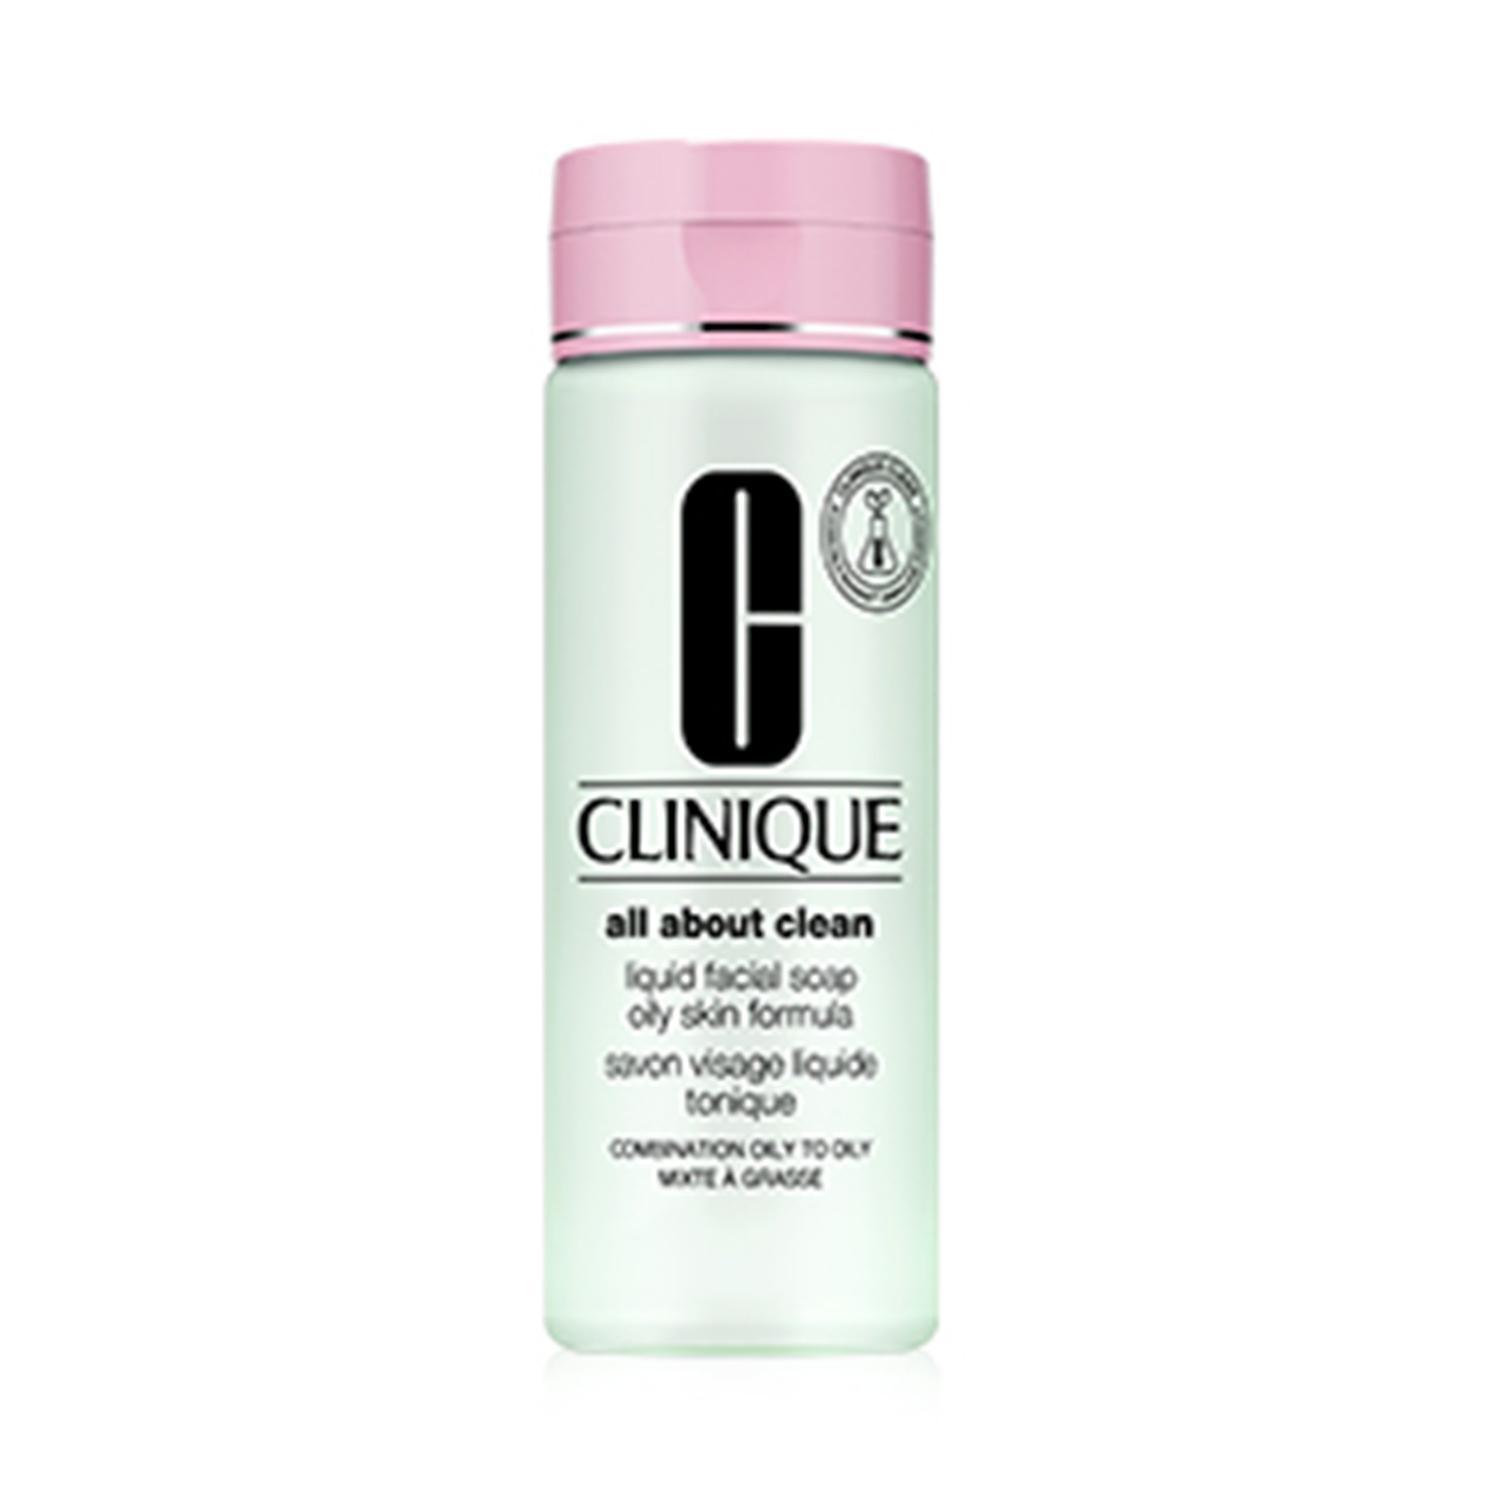 clinique liquid facial soap (200ml)